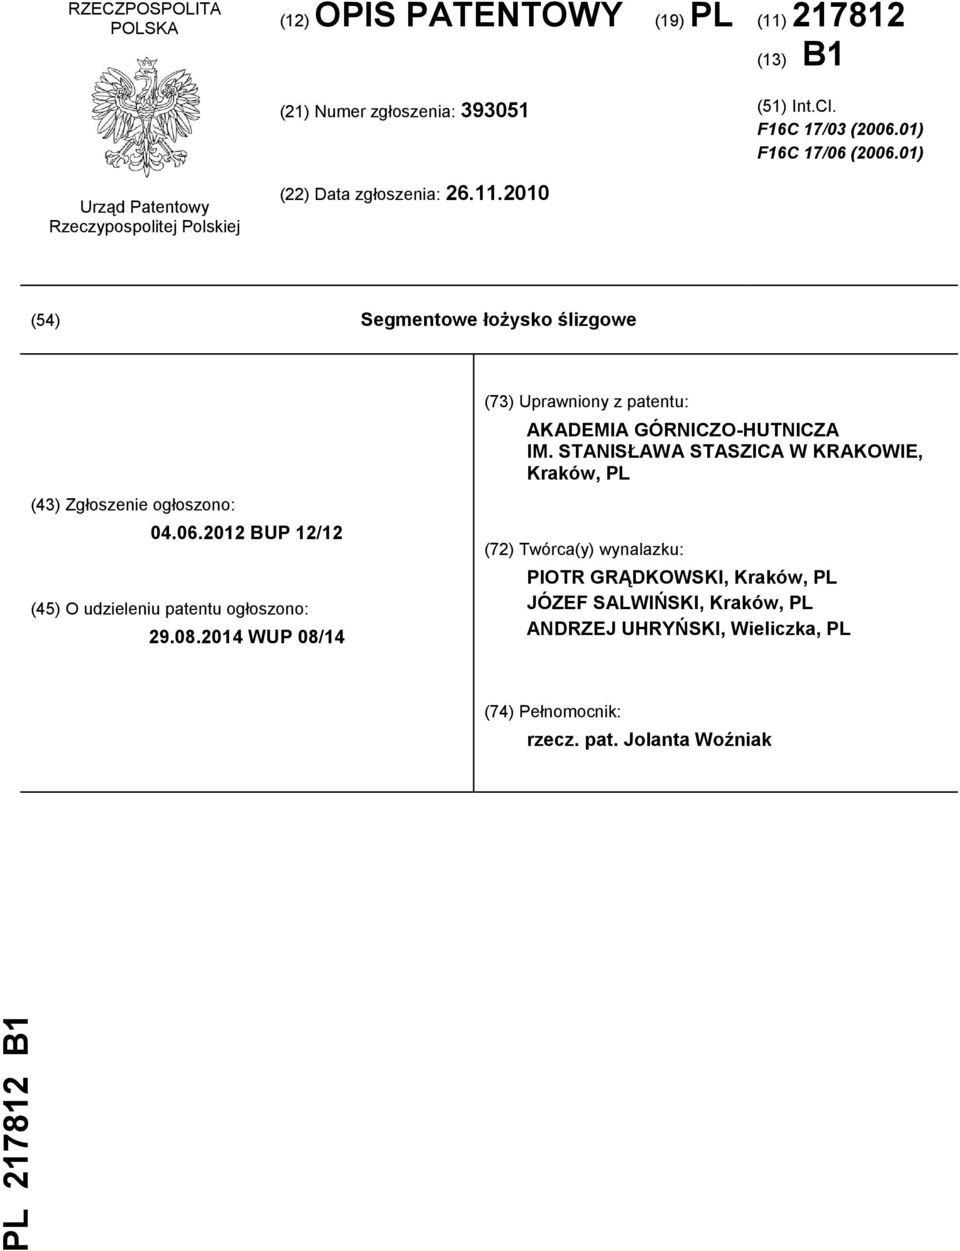 2010 (54) Segmentowe łożysko ślizgowe (43) Zgłoszenie ogłoszono: 04.06.2012 BUP 12/12 (45) O udzieleniu patentu ogłoszono: 29.08.